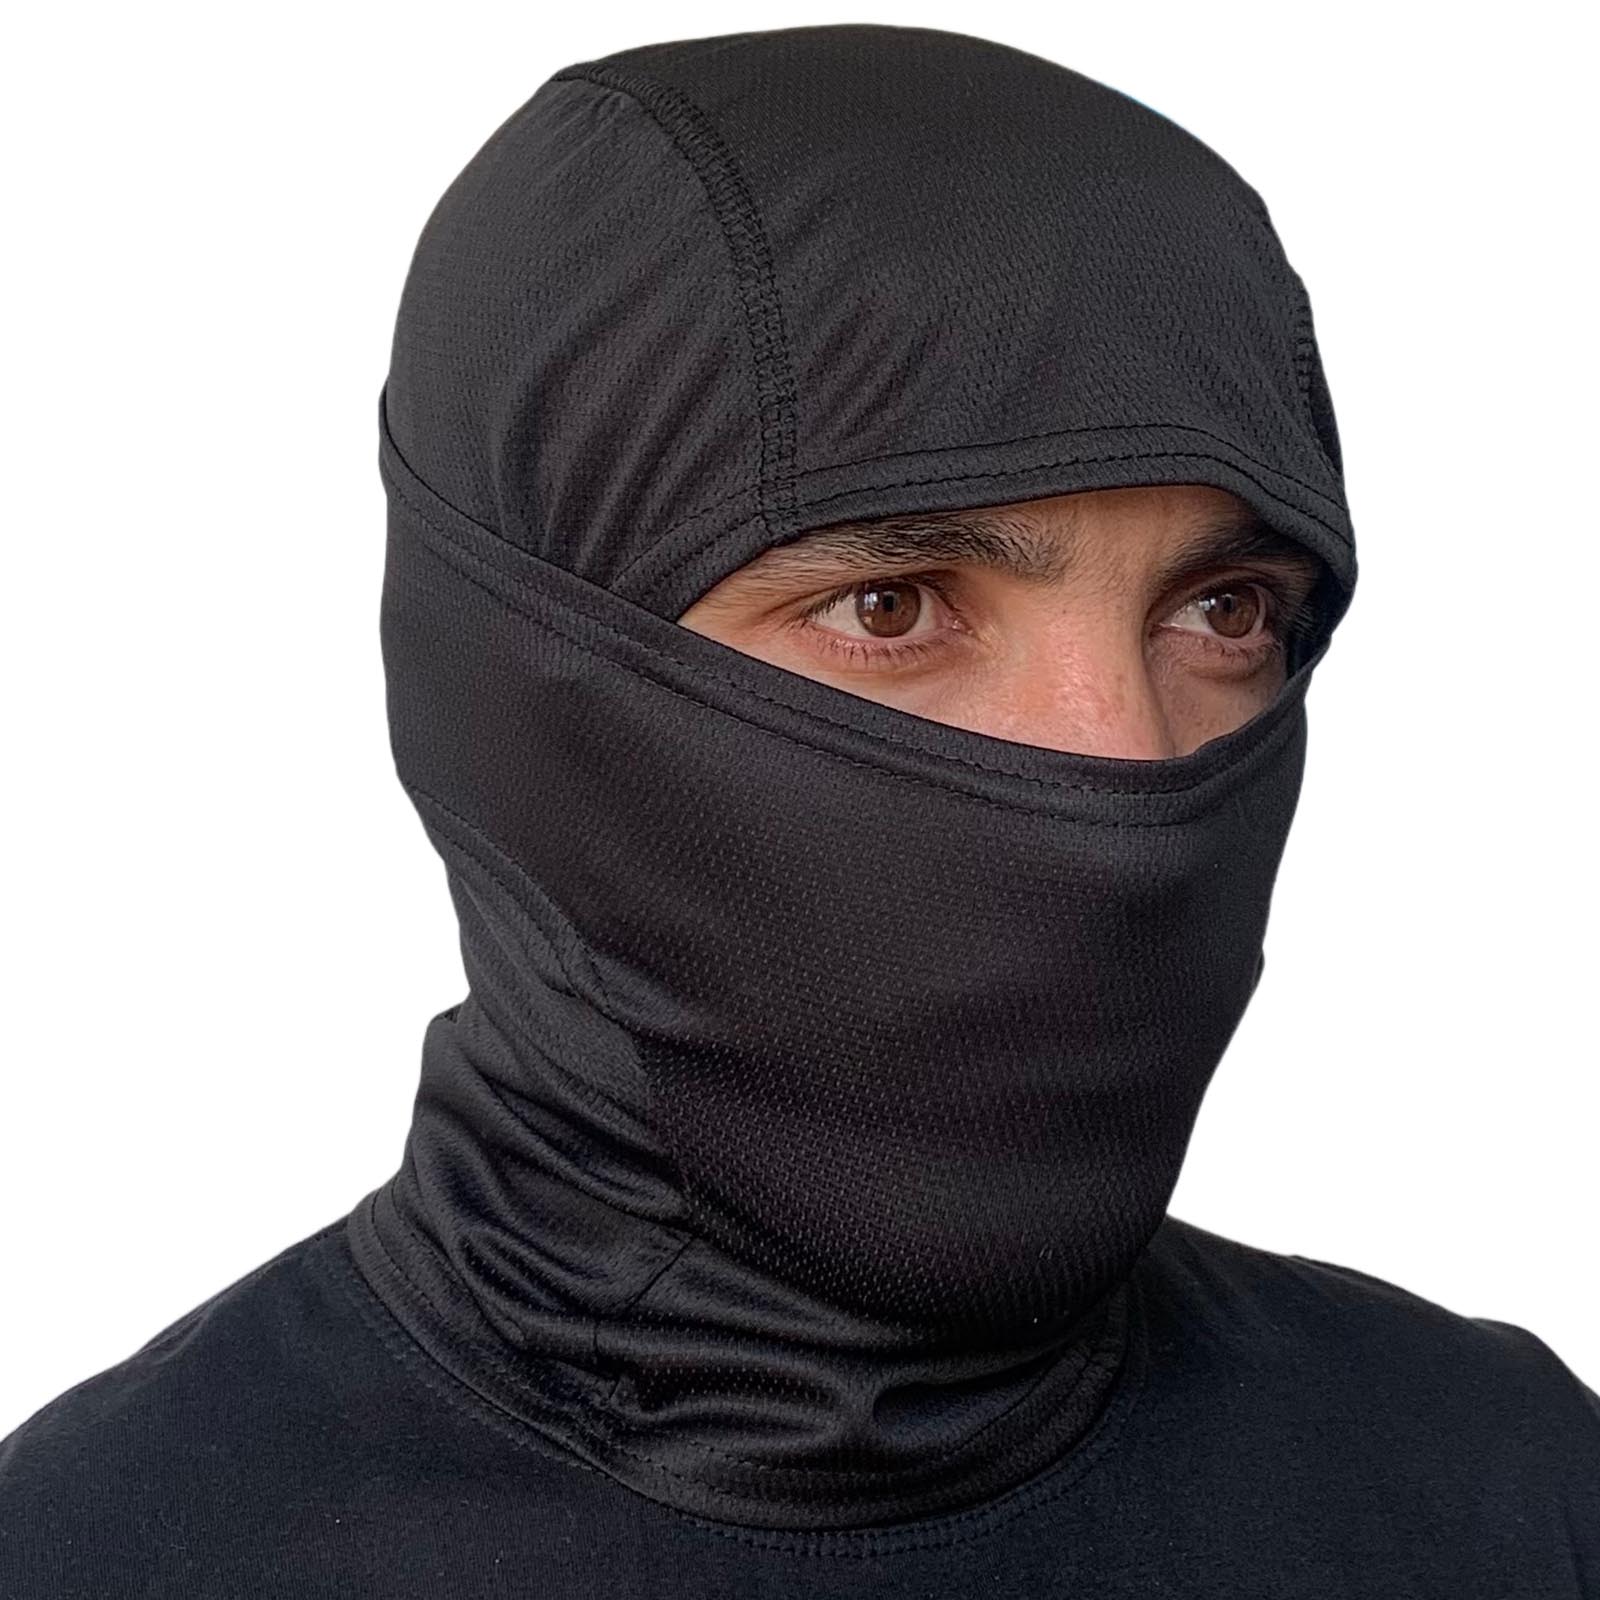 Купить в интернет магазине маску подшлемник черного цвета